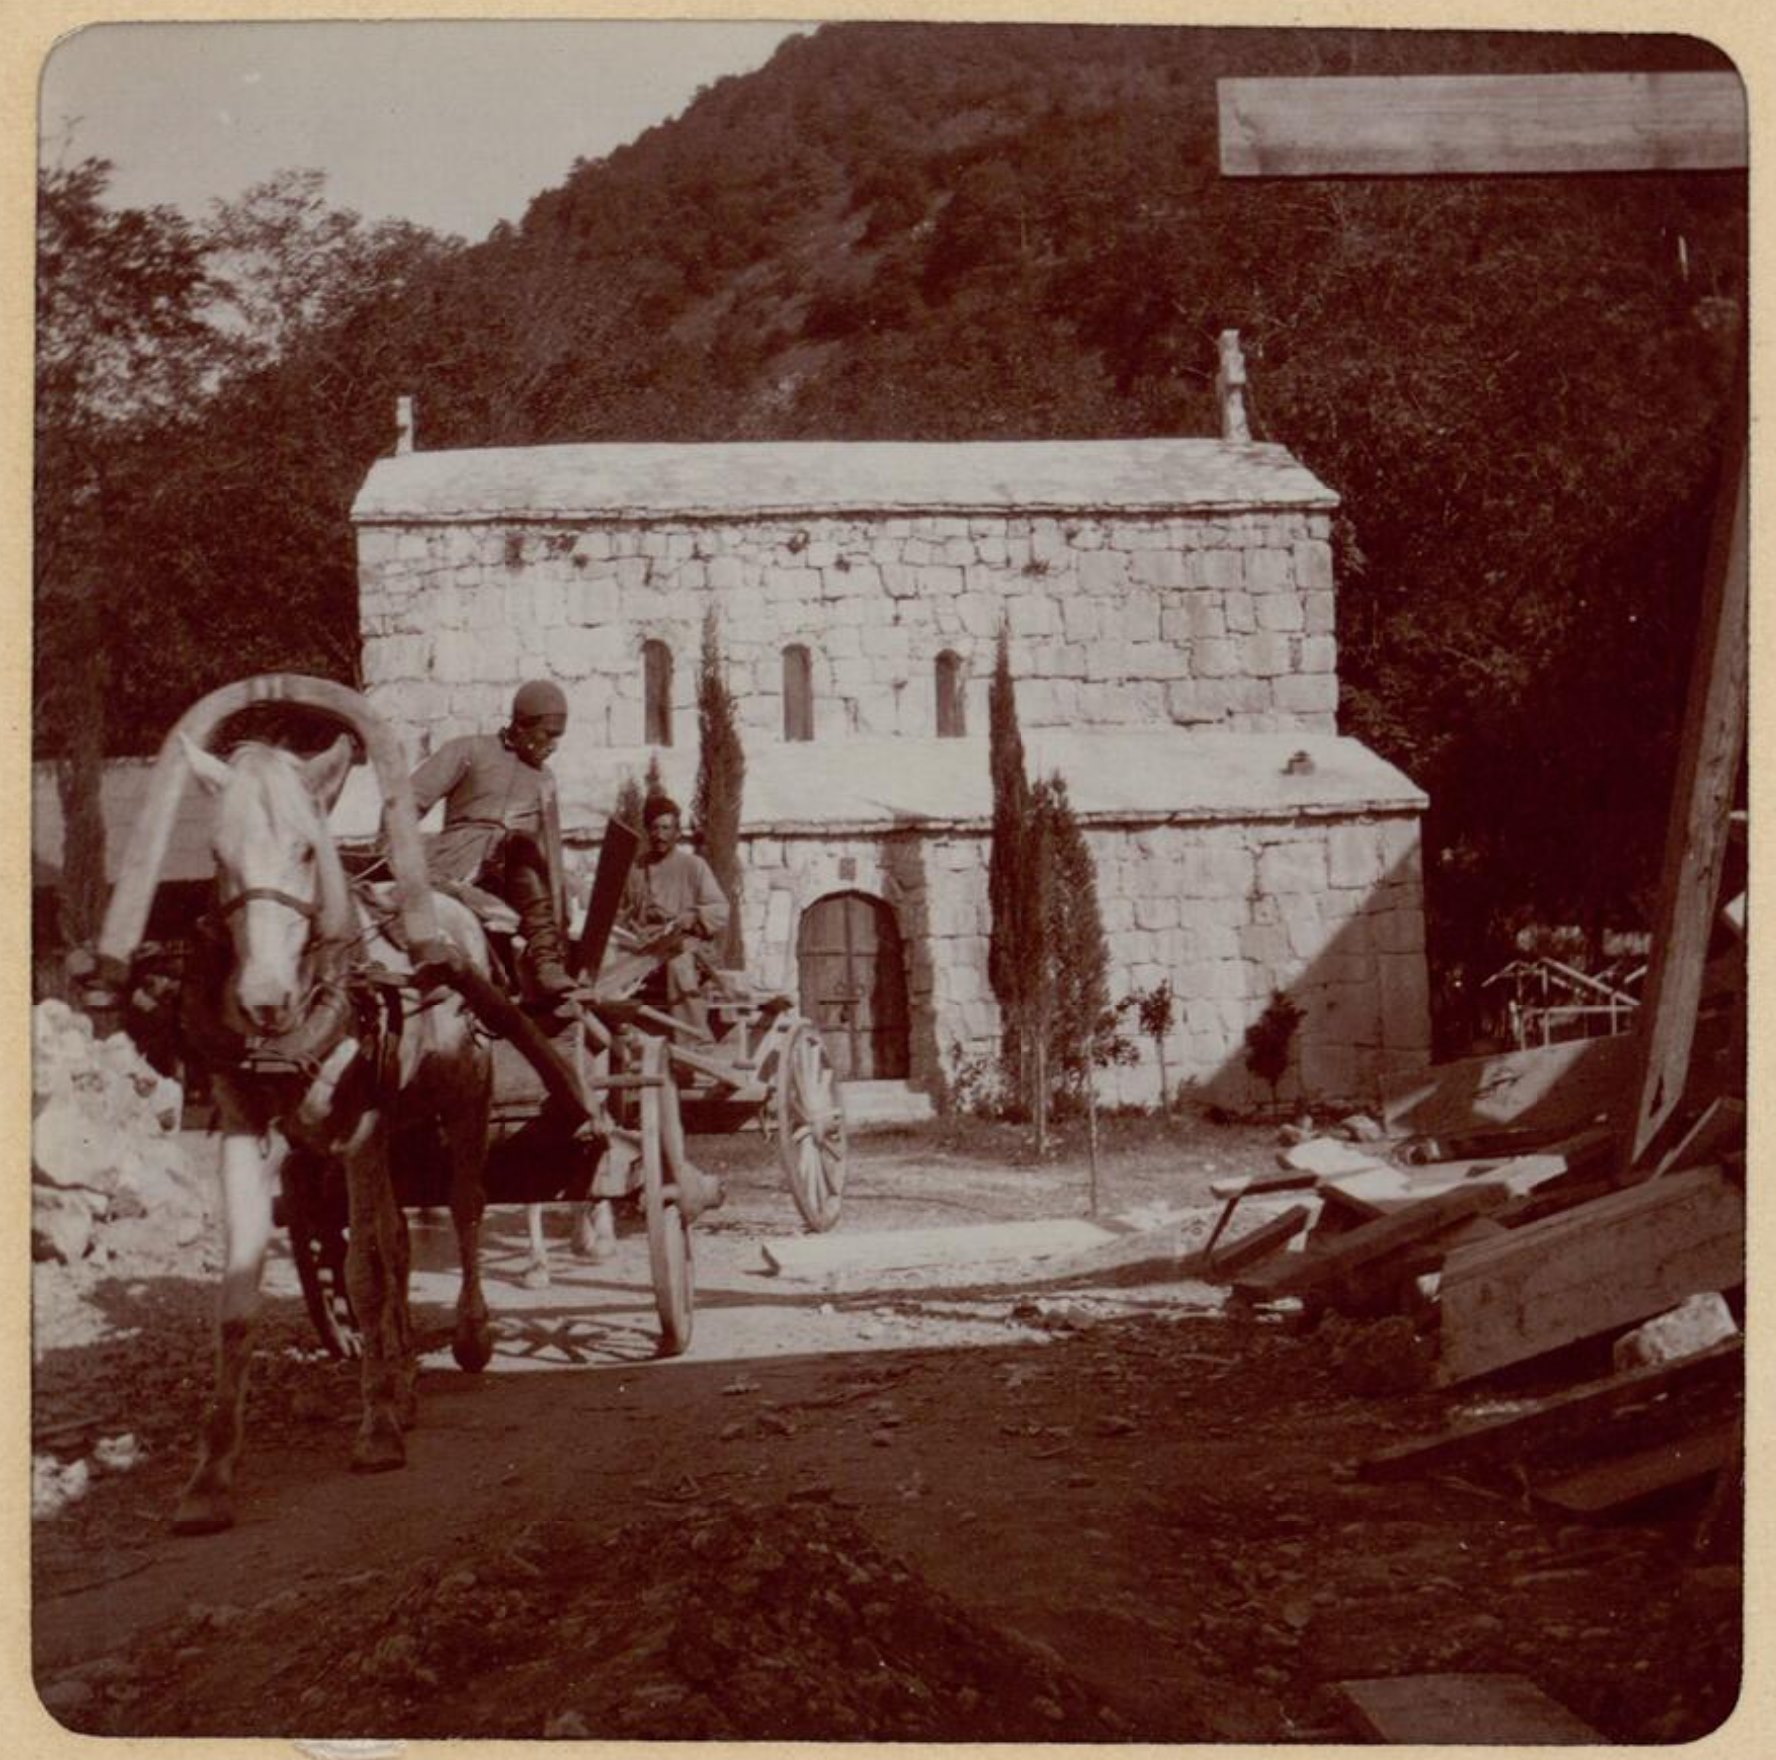 Abkhazia 1903, Photo by Joseph de Baye